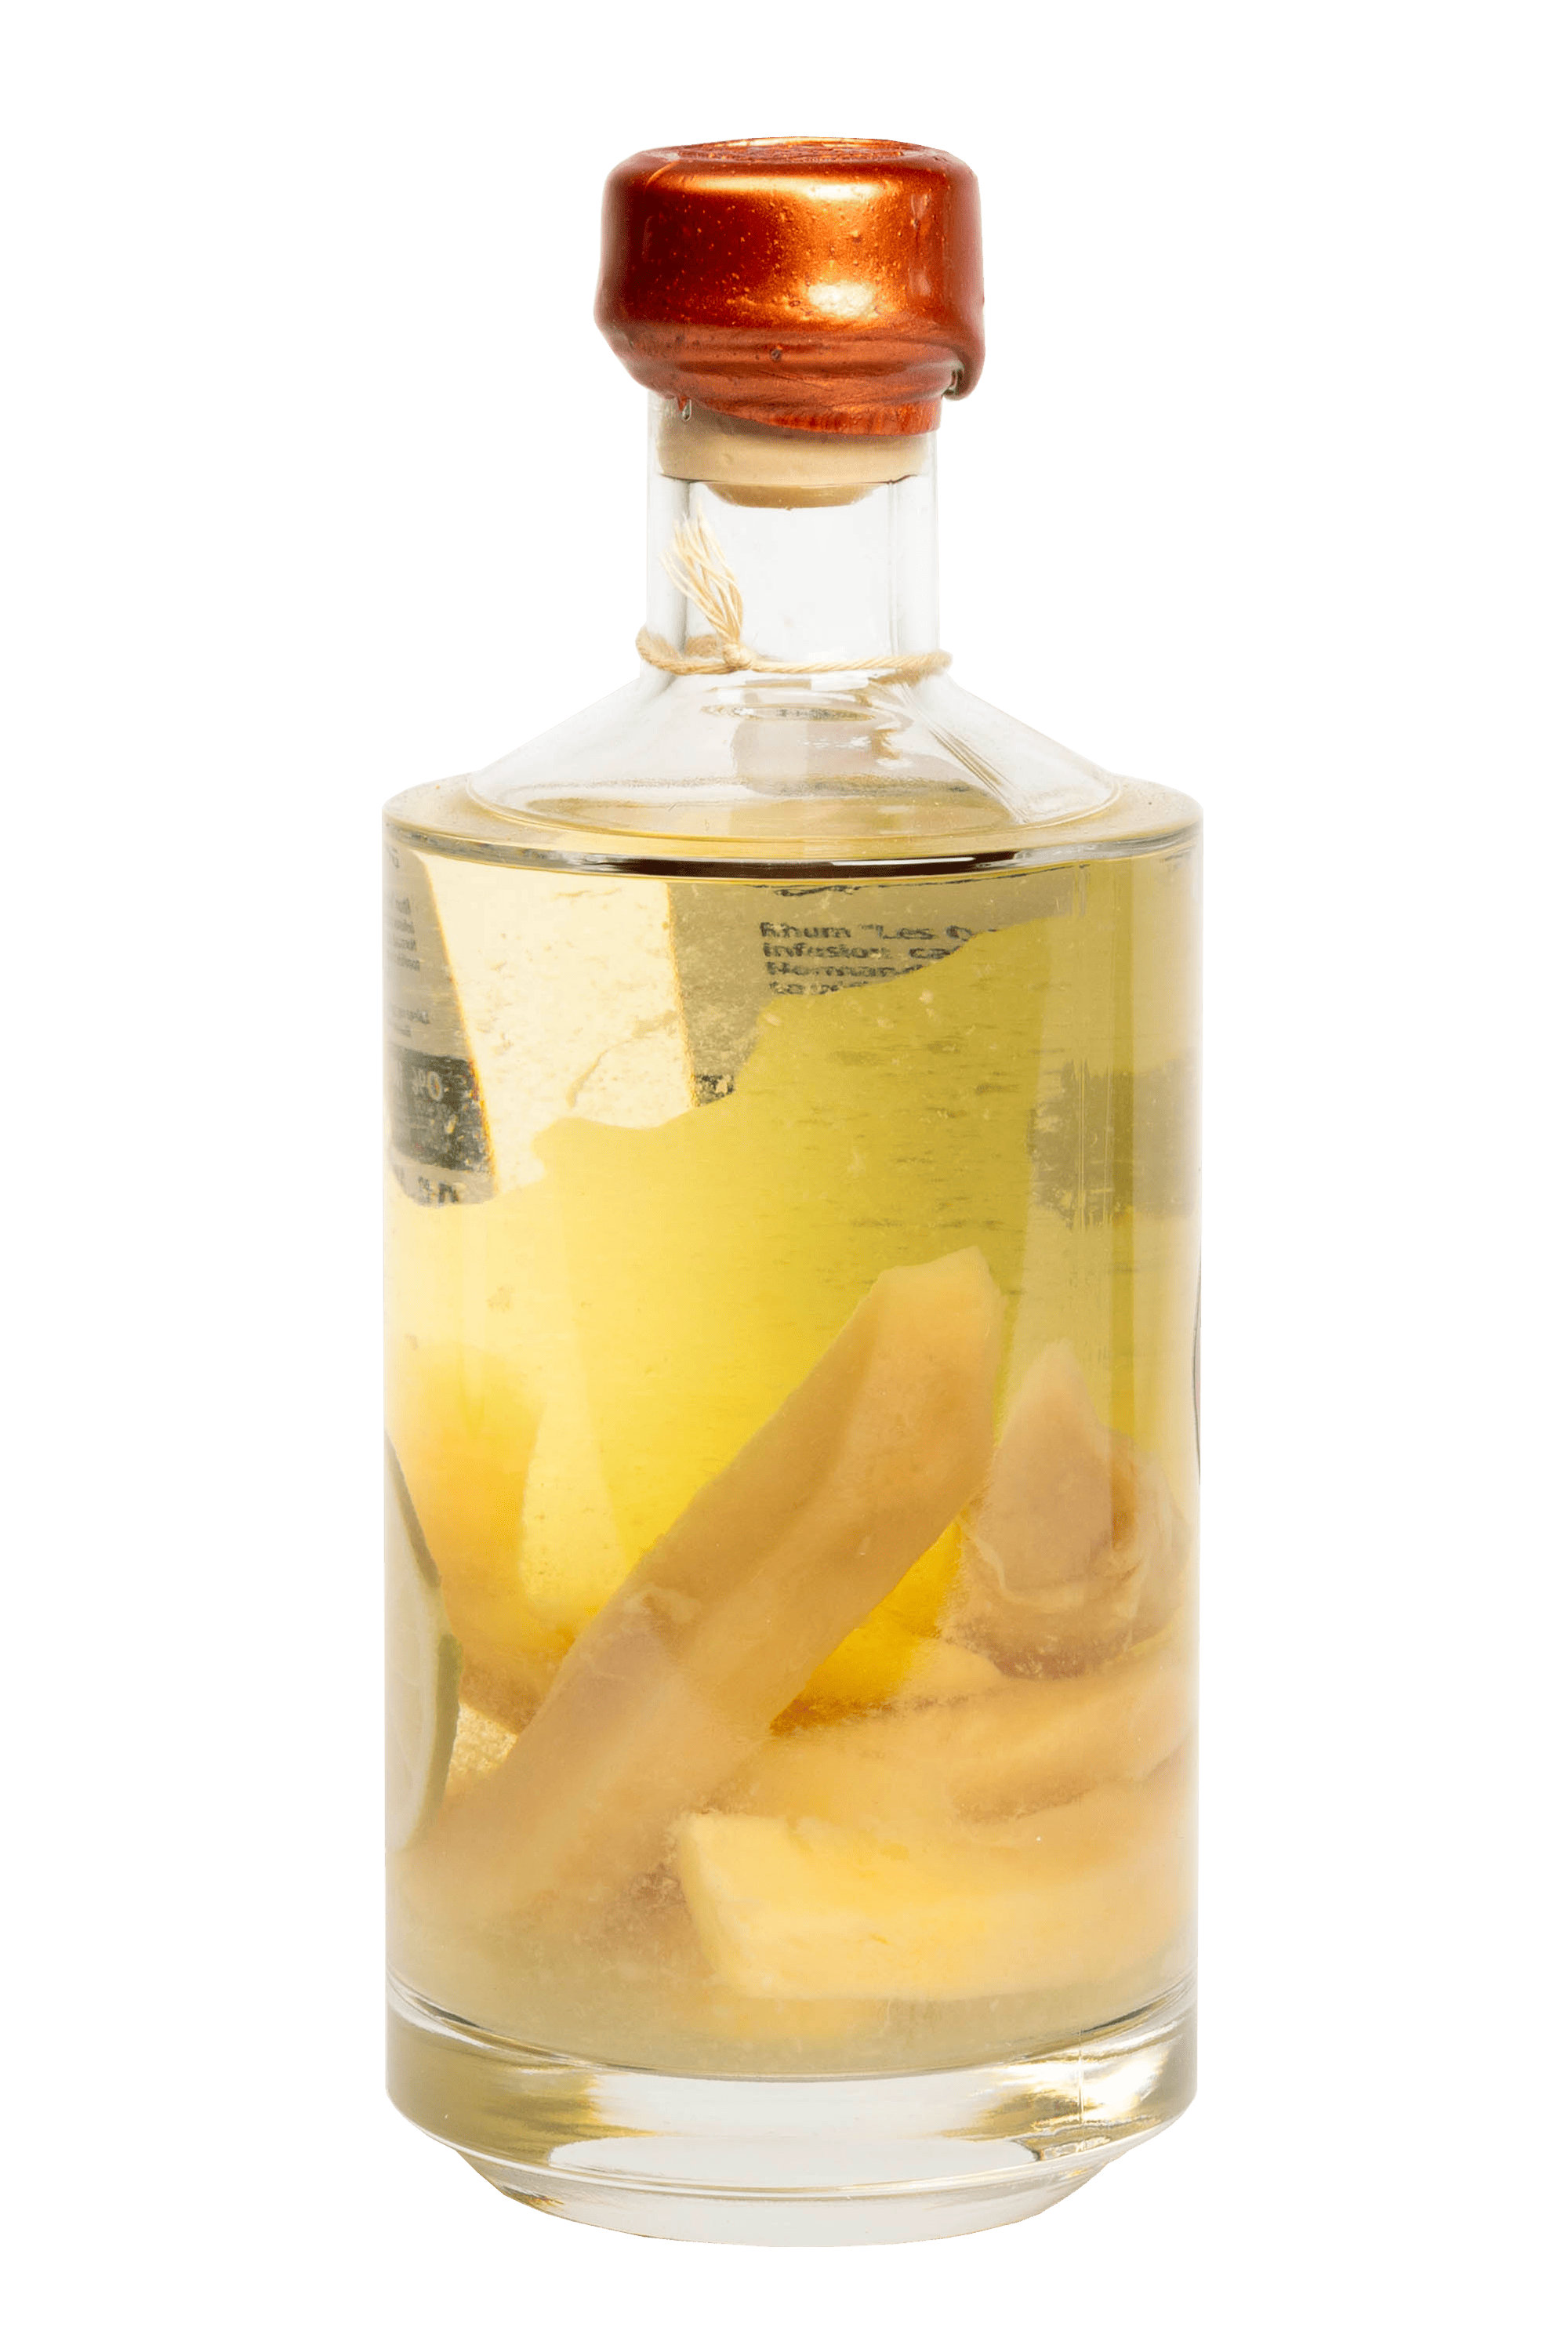 Bouteille de rhum gravée pour offrir : rhum arrangé mangue citron de Franc-tireur